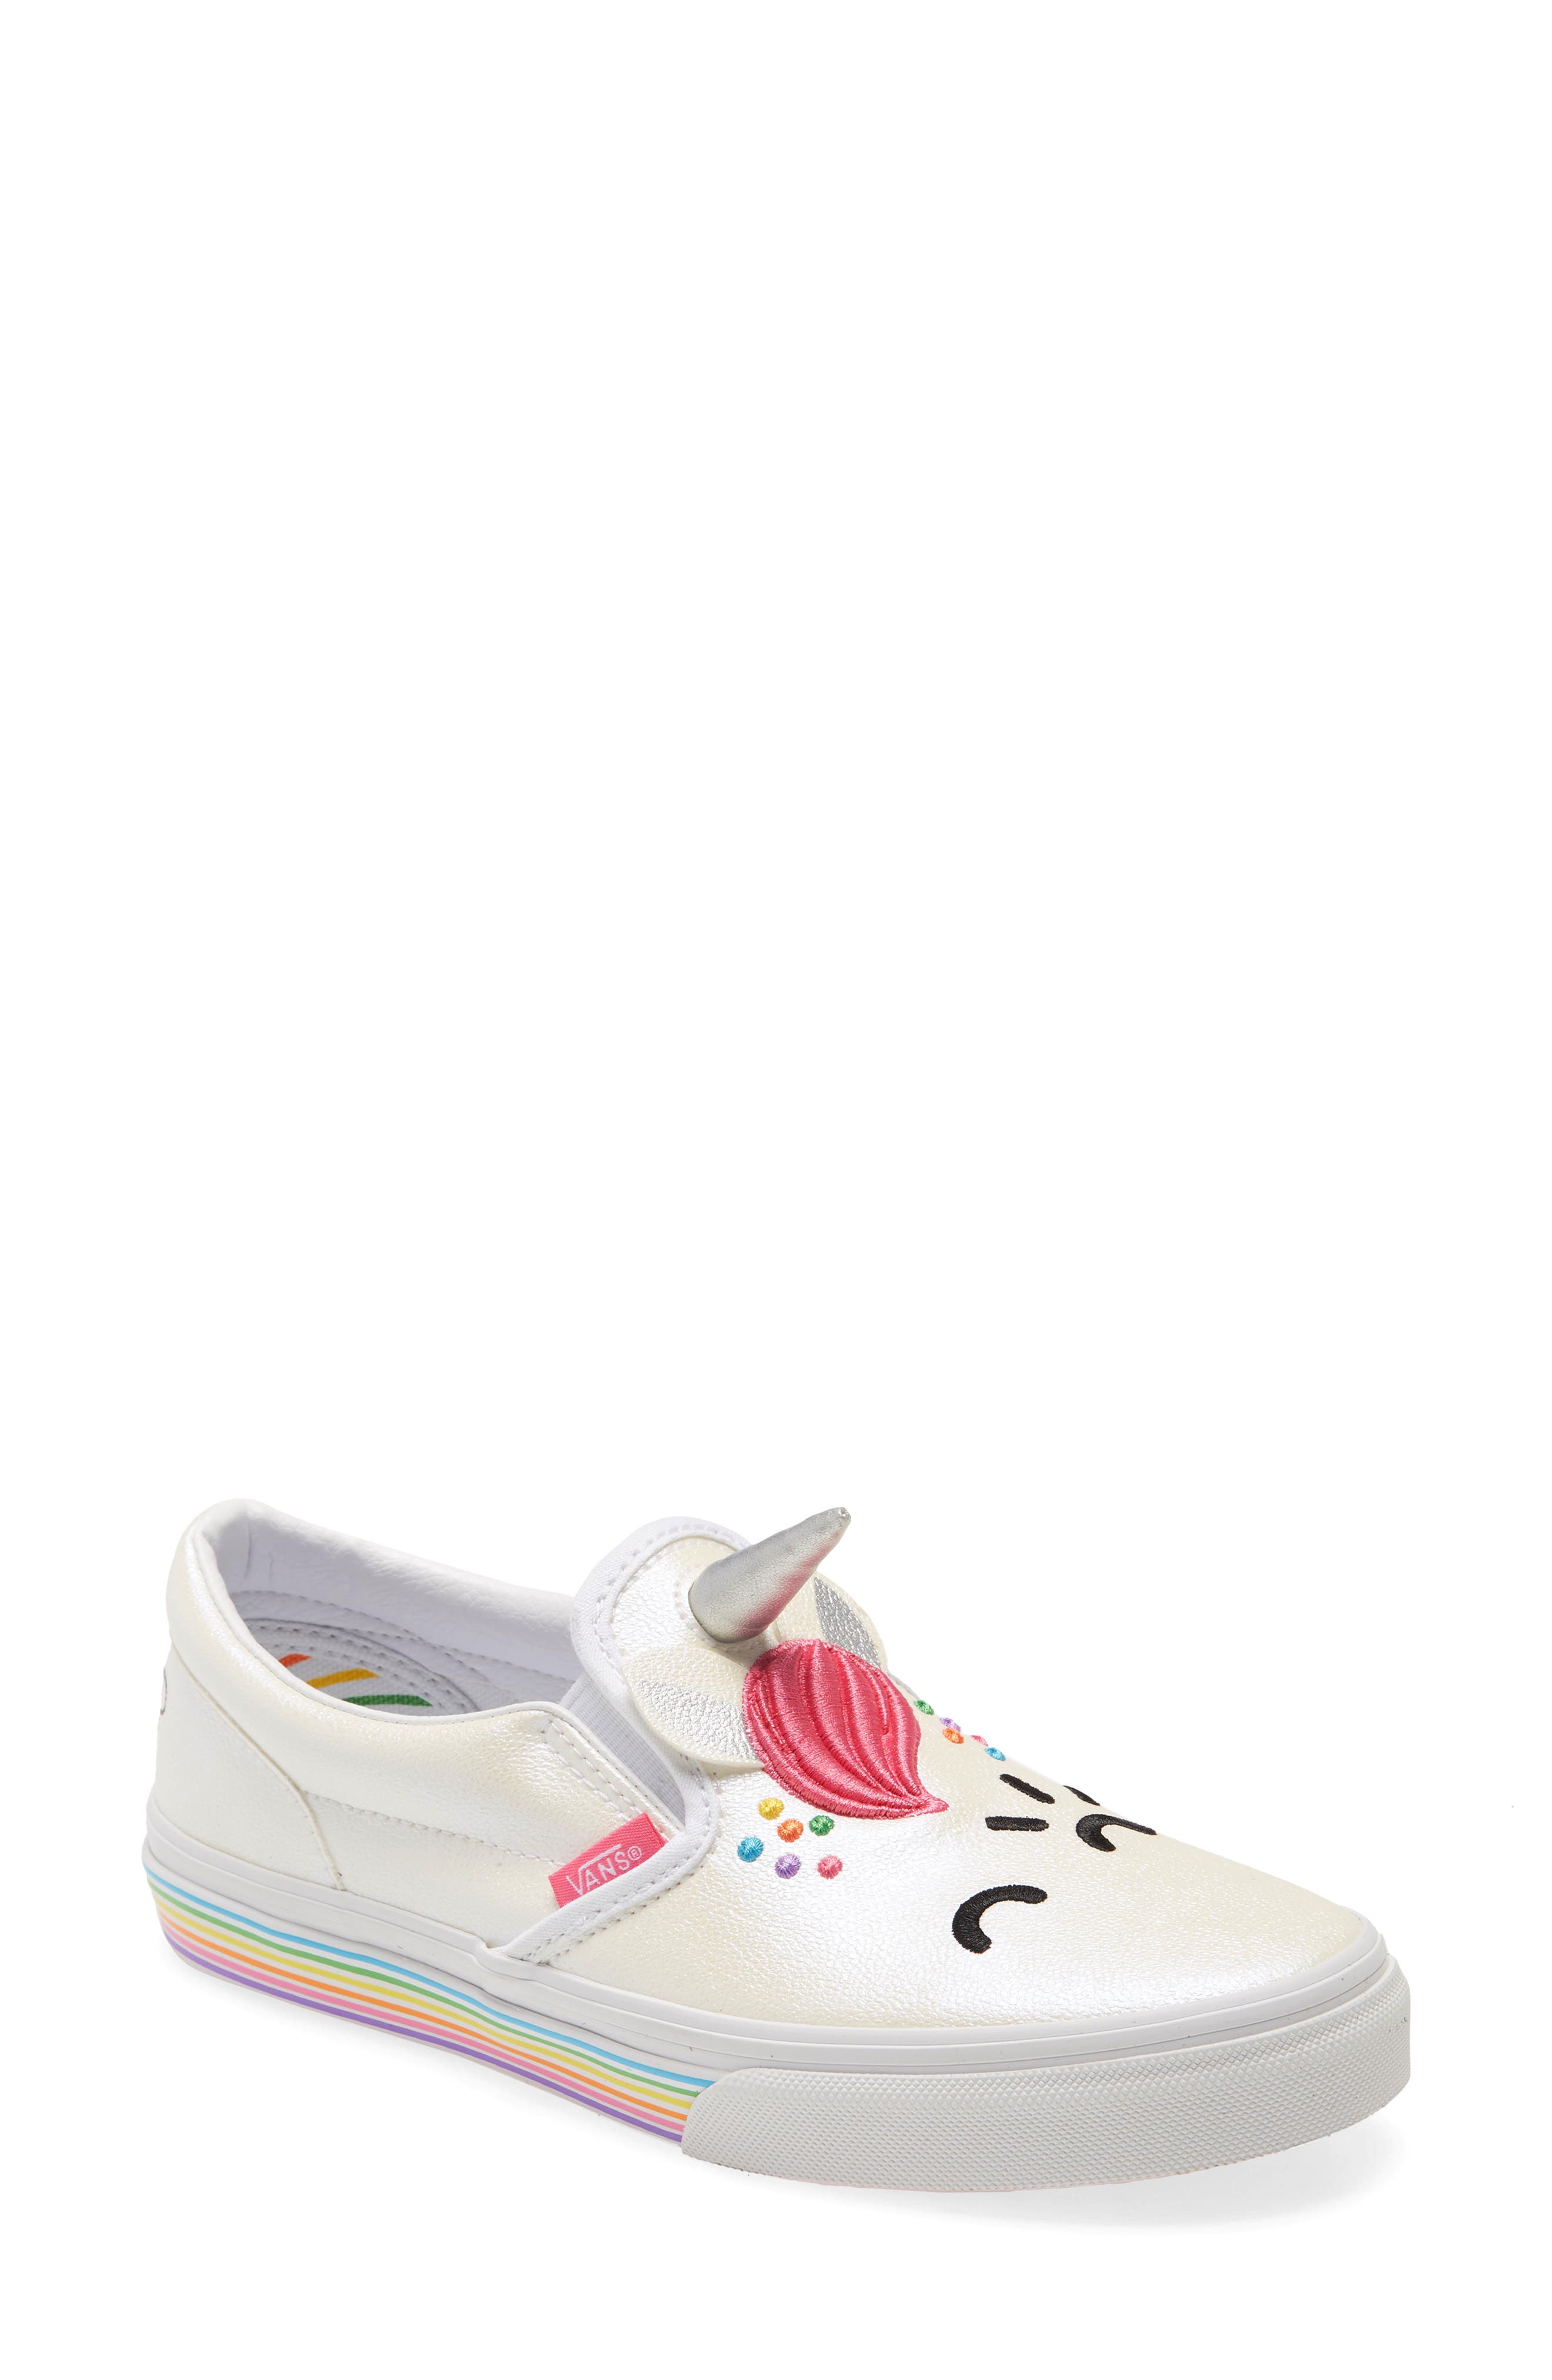 vans kids unicorn shoes